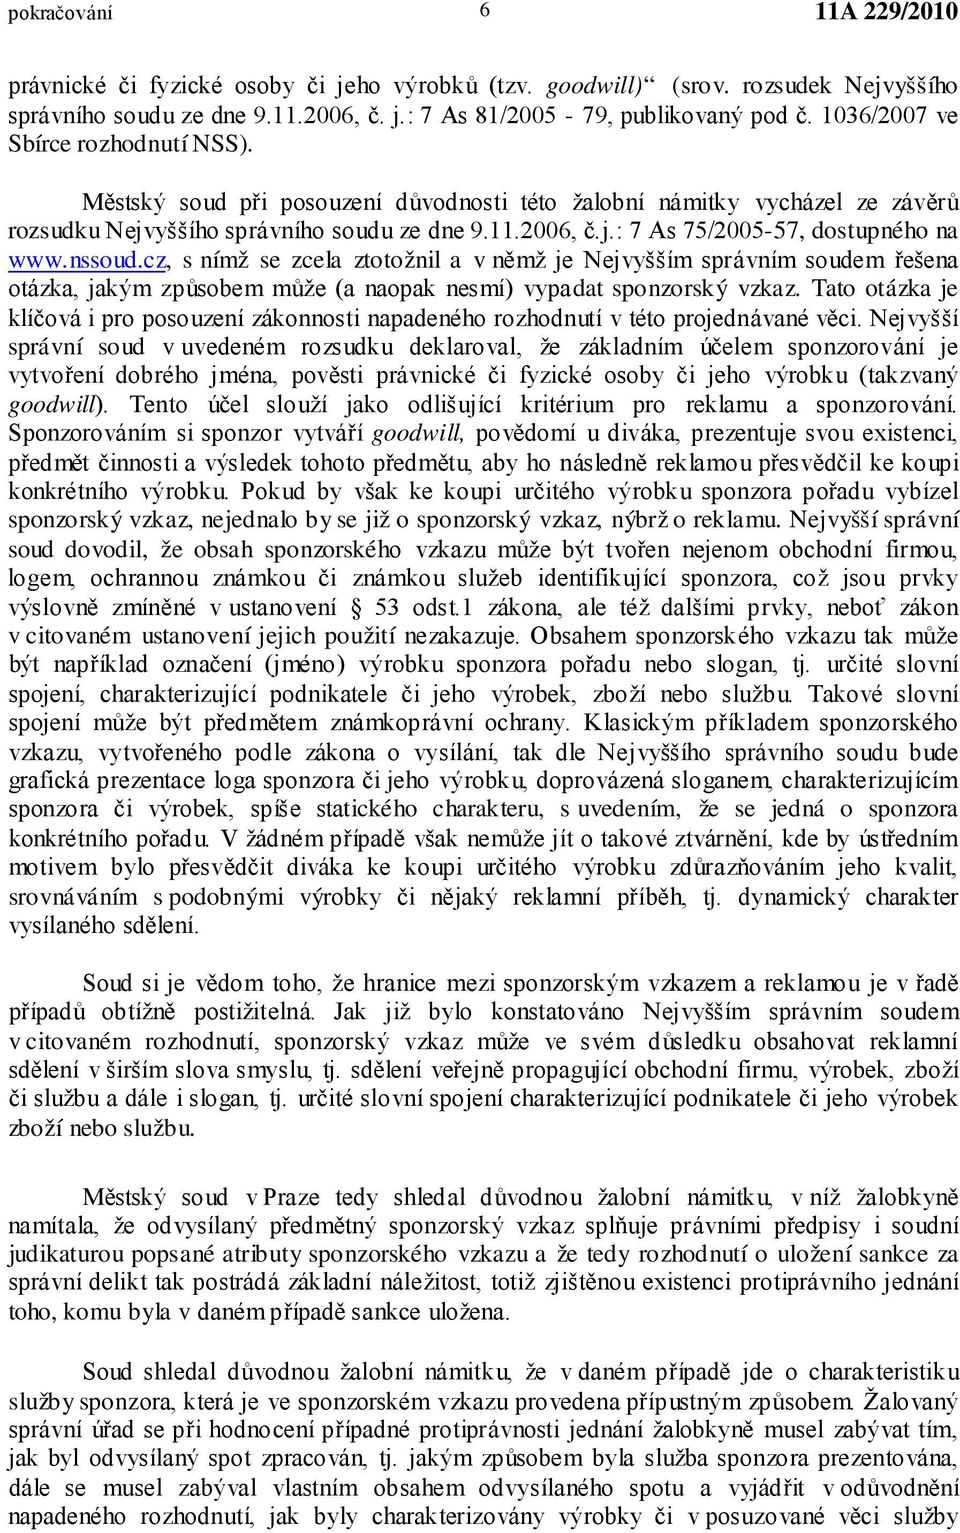 nssoud.cz, s nímž se zcela ztotožnil a v němž je Nejvyšším správním soudem řešena otázka, jakým způsobem může (a naopak nesmí) vypadat sponzorský vzkaz.